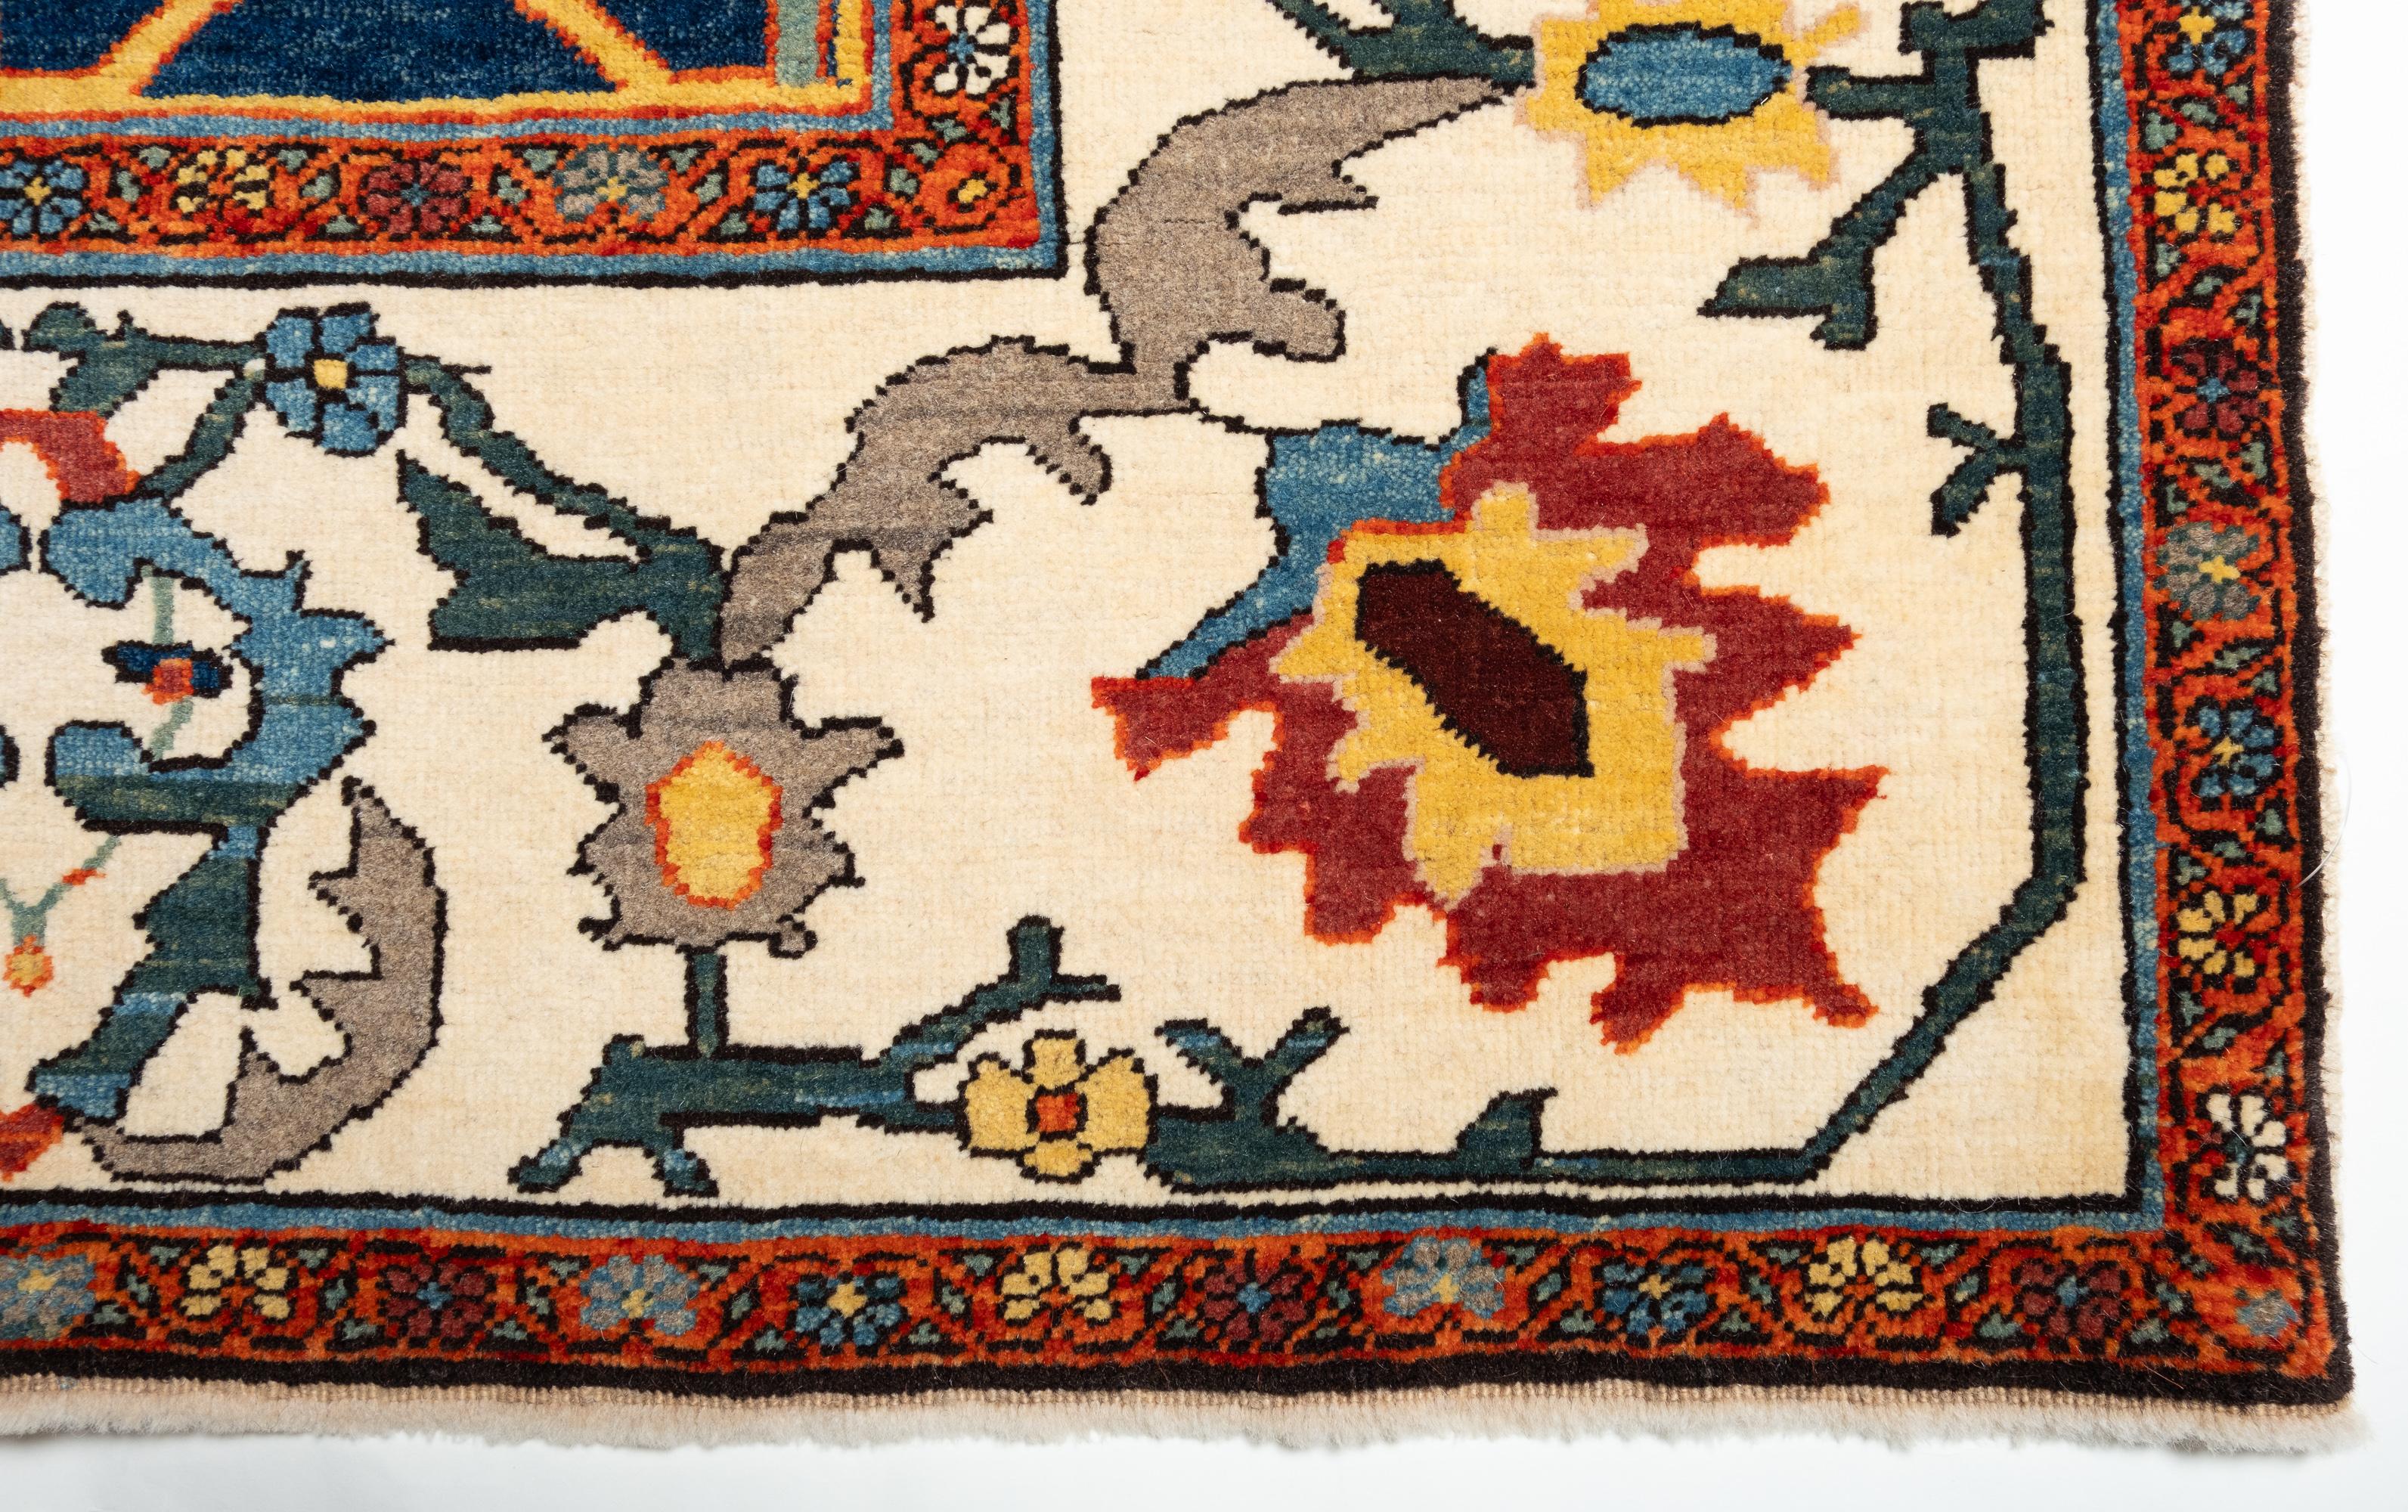 Turkish Ararat Rugs Bidjar Rug - 19th Century Design Persian Revival Carpet Natural Dyed For Sale